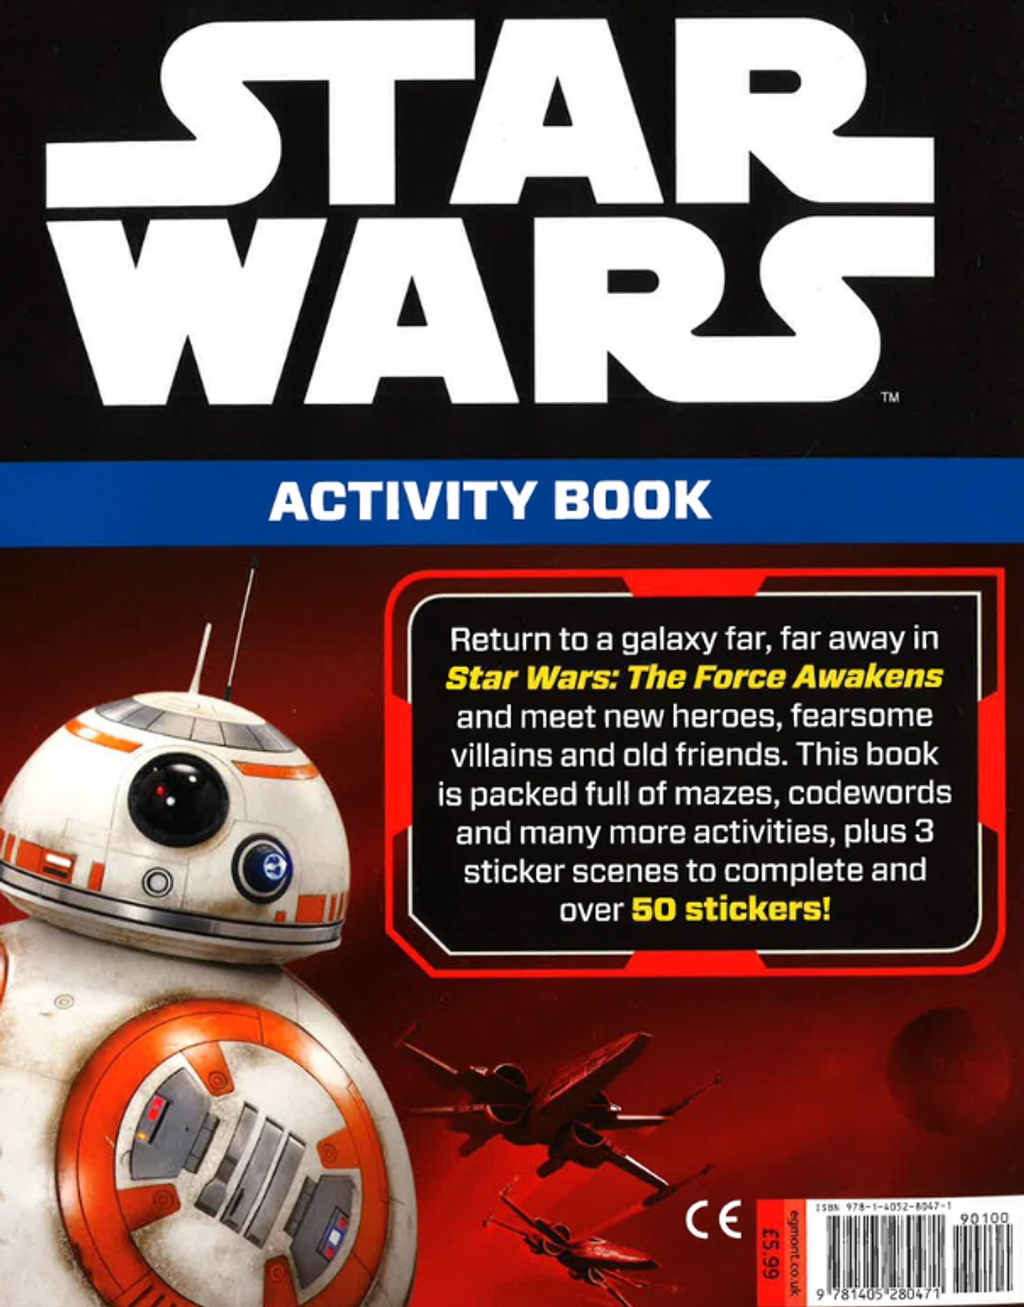 starwars activity book 2